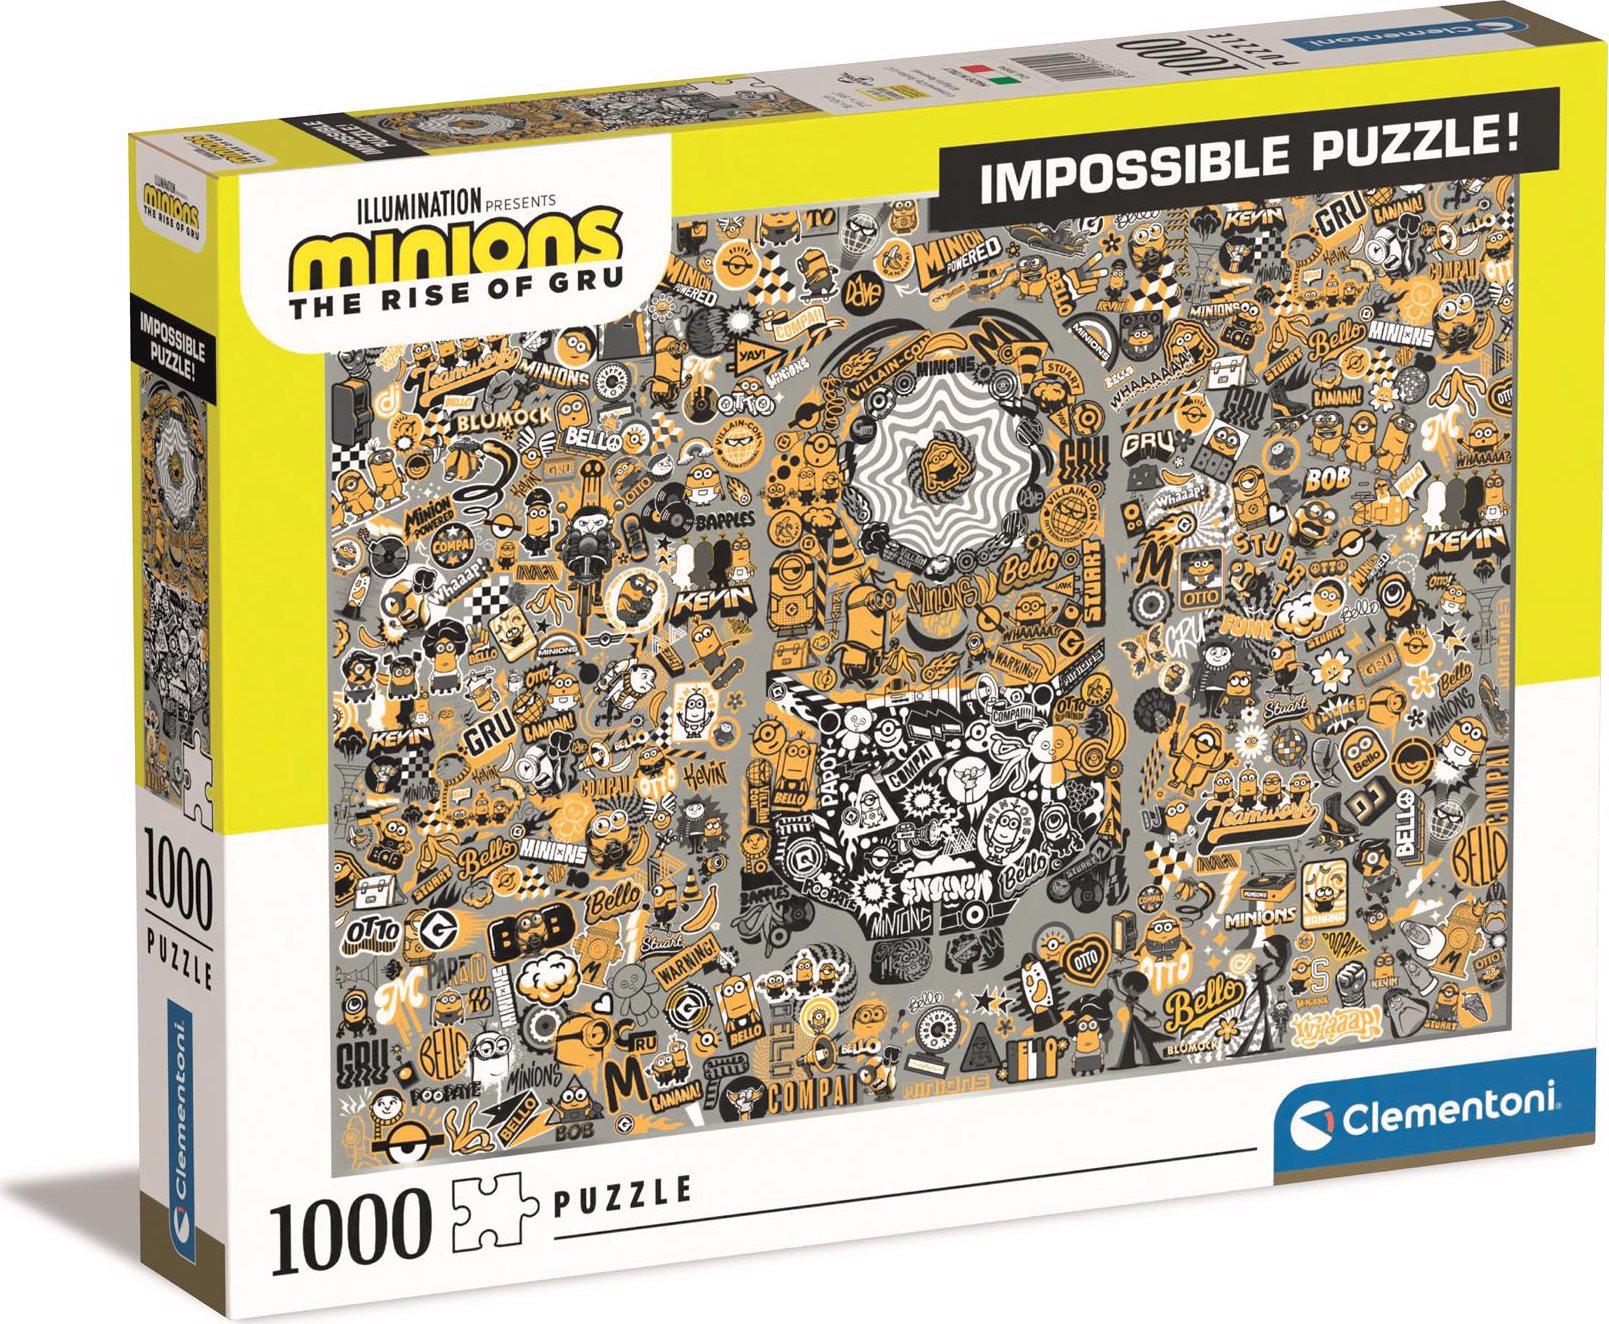 Puzzle Impossible: Mimoni 2: Ilumination